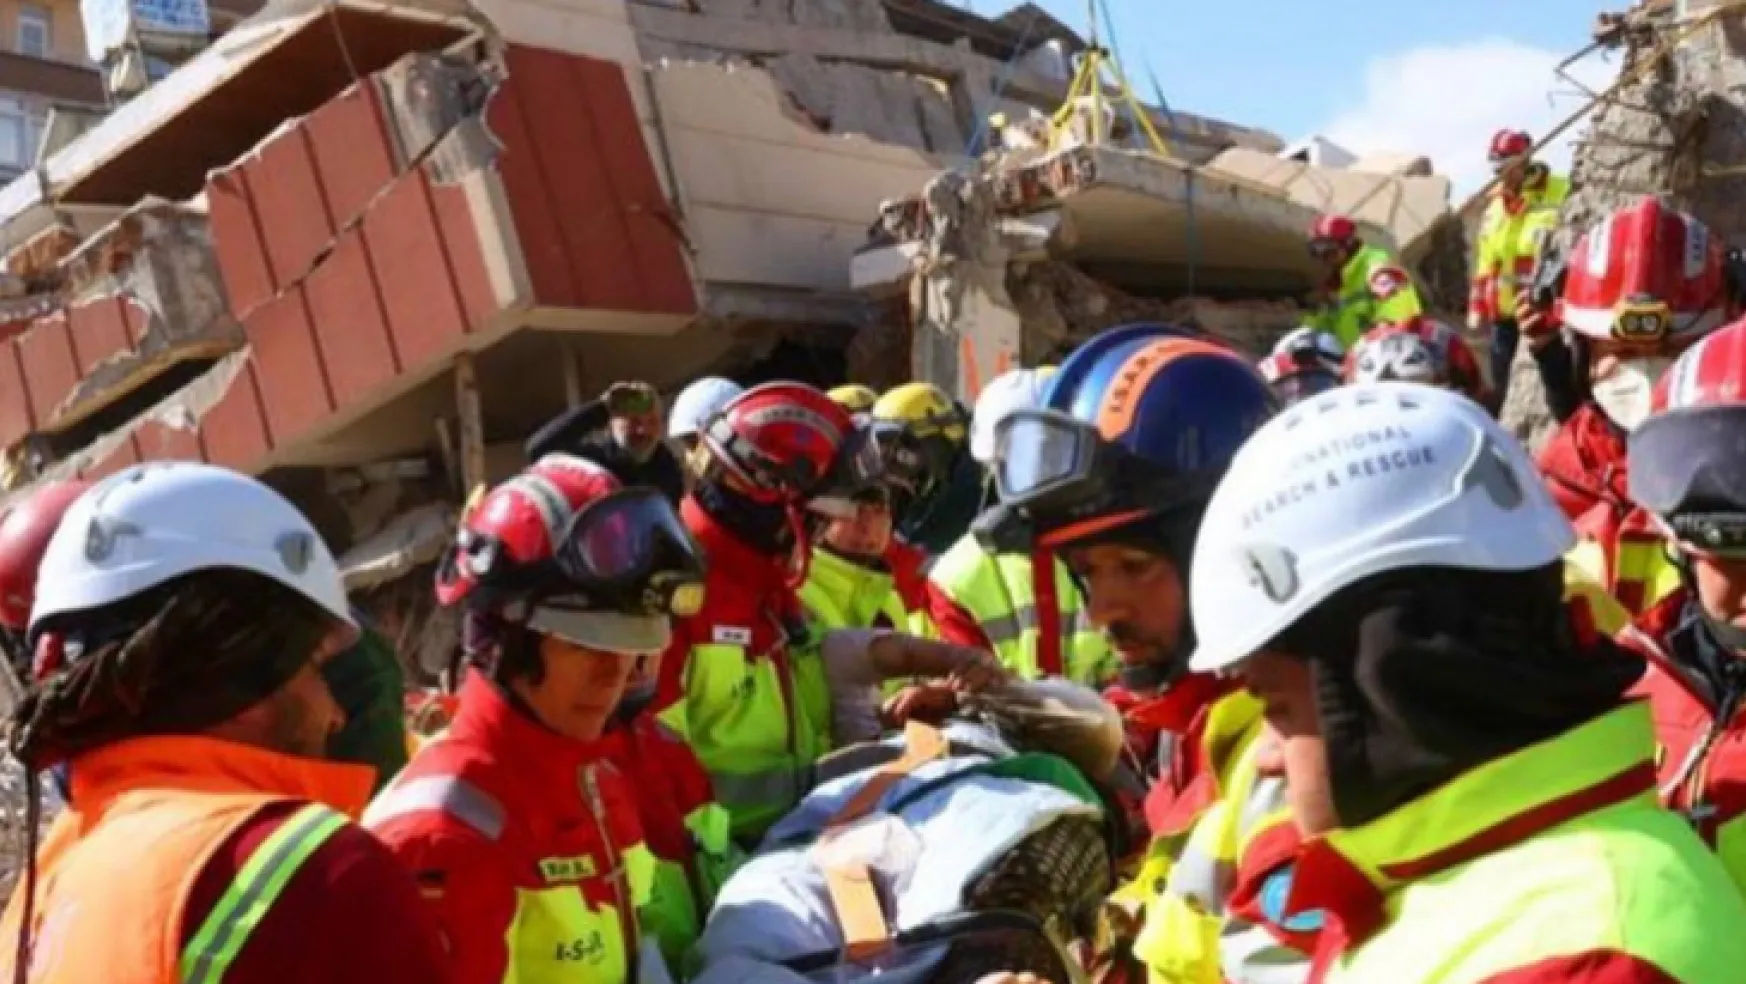 Depremde 56 kişiyi sağ çıkaran ekip Zeynep'i unutamıyor